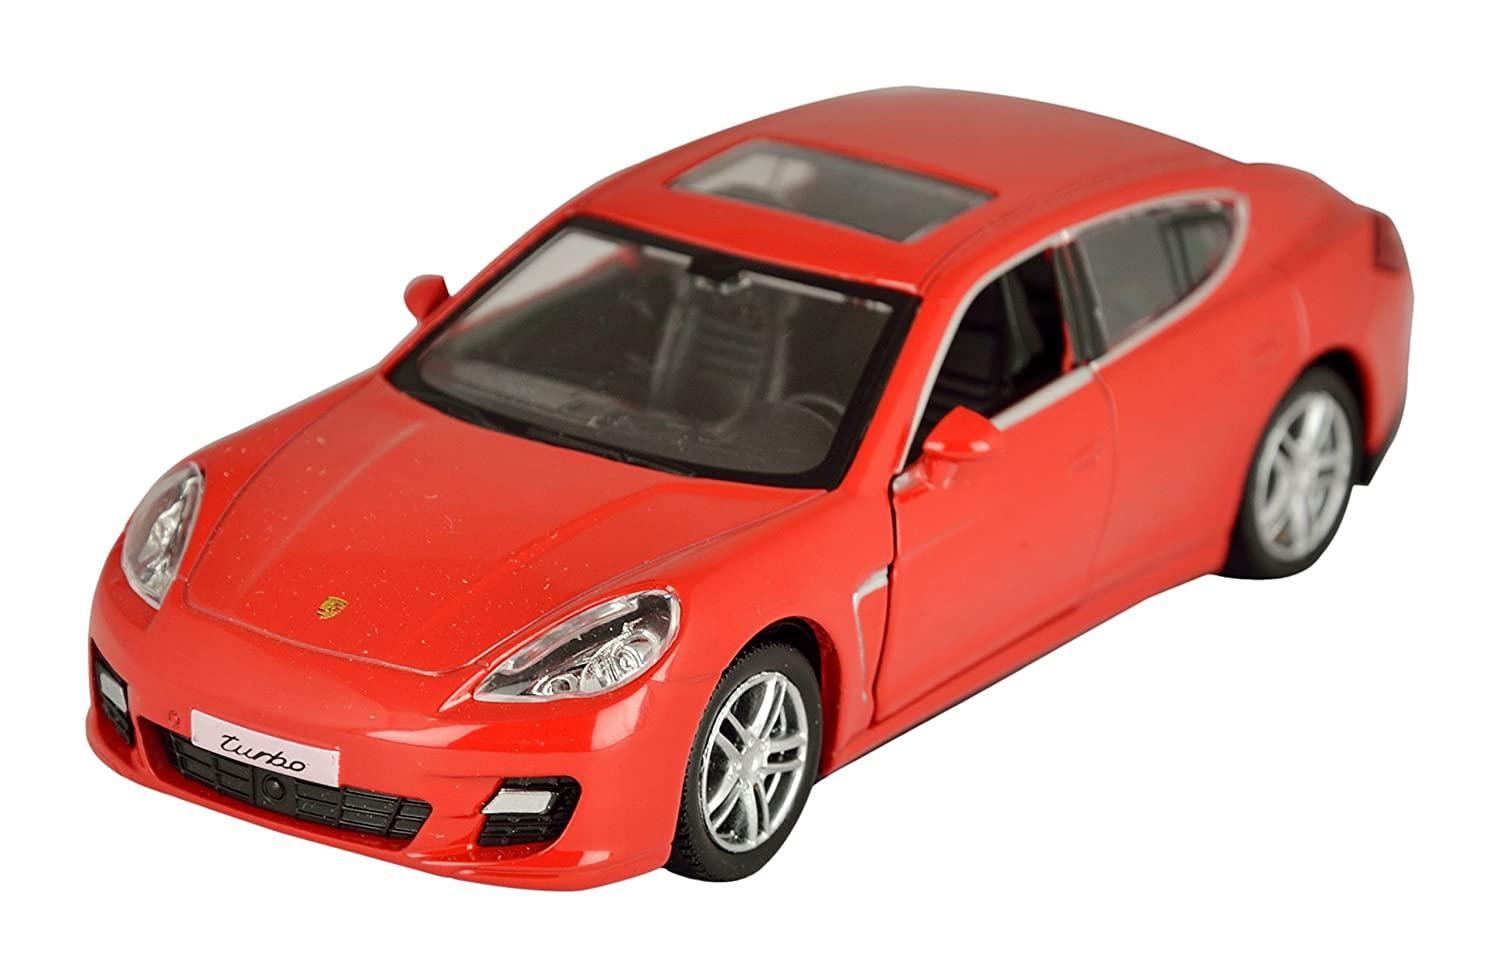 Buy Miniature Porsche Online In India -  India